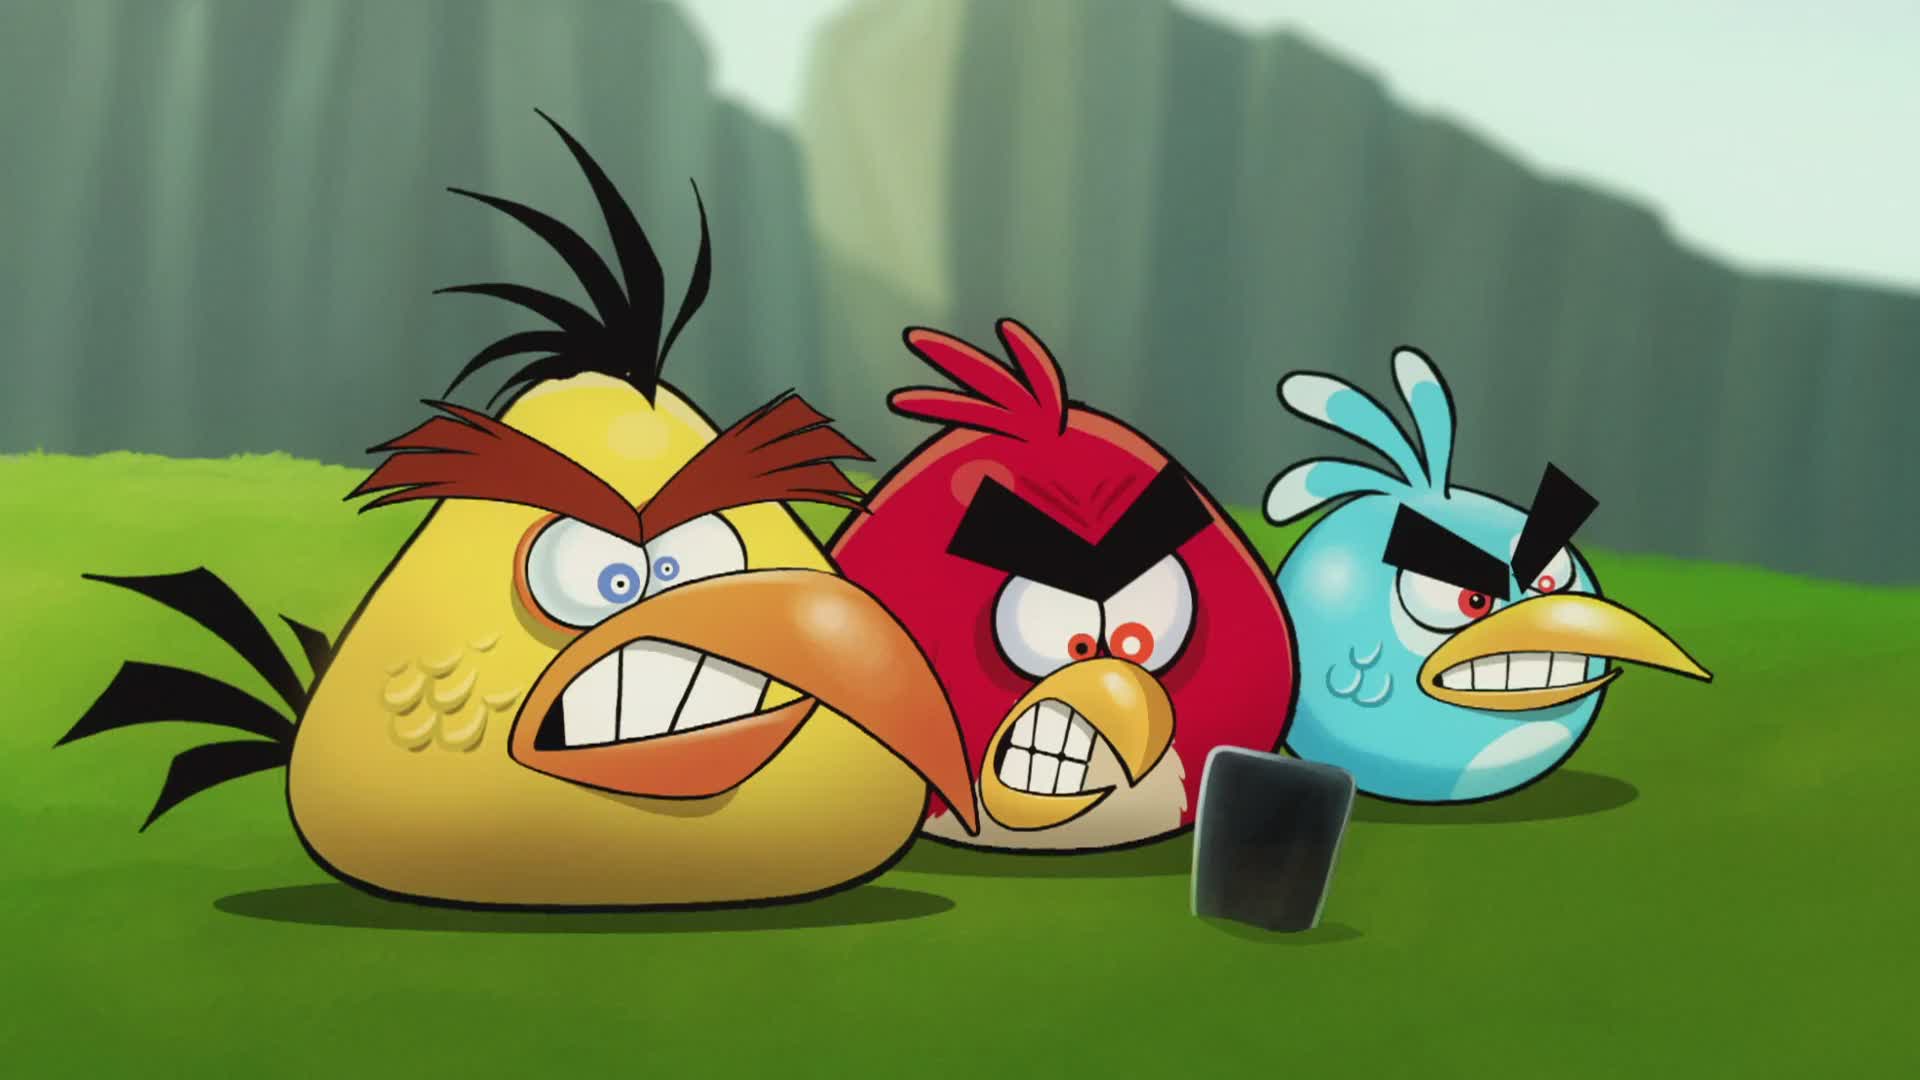 Angry Birds Wallpaper Download Pc 45836 Desktop Wallpapers | Top ...